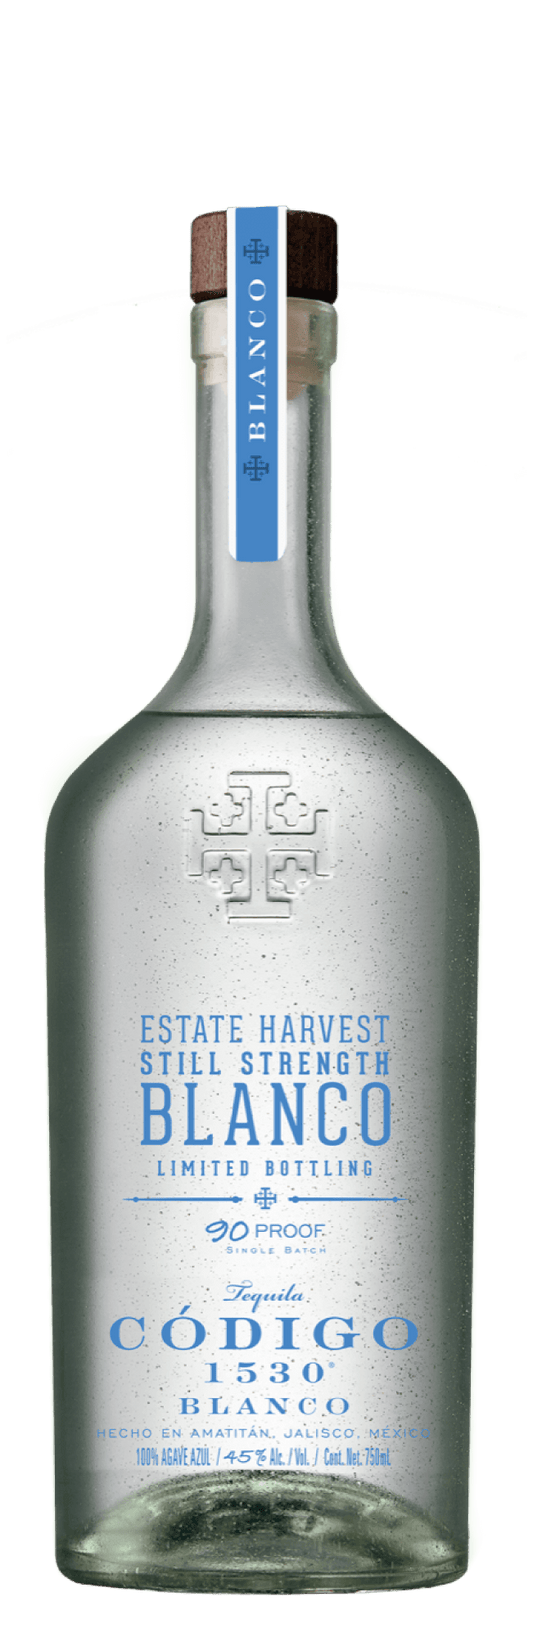 Código 1530 Still Strength Blanco (Estate Harvest)